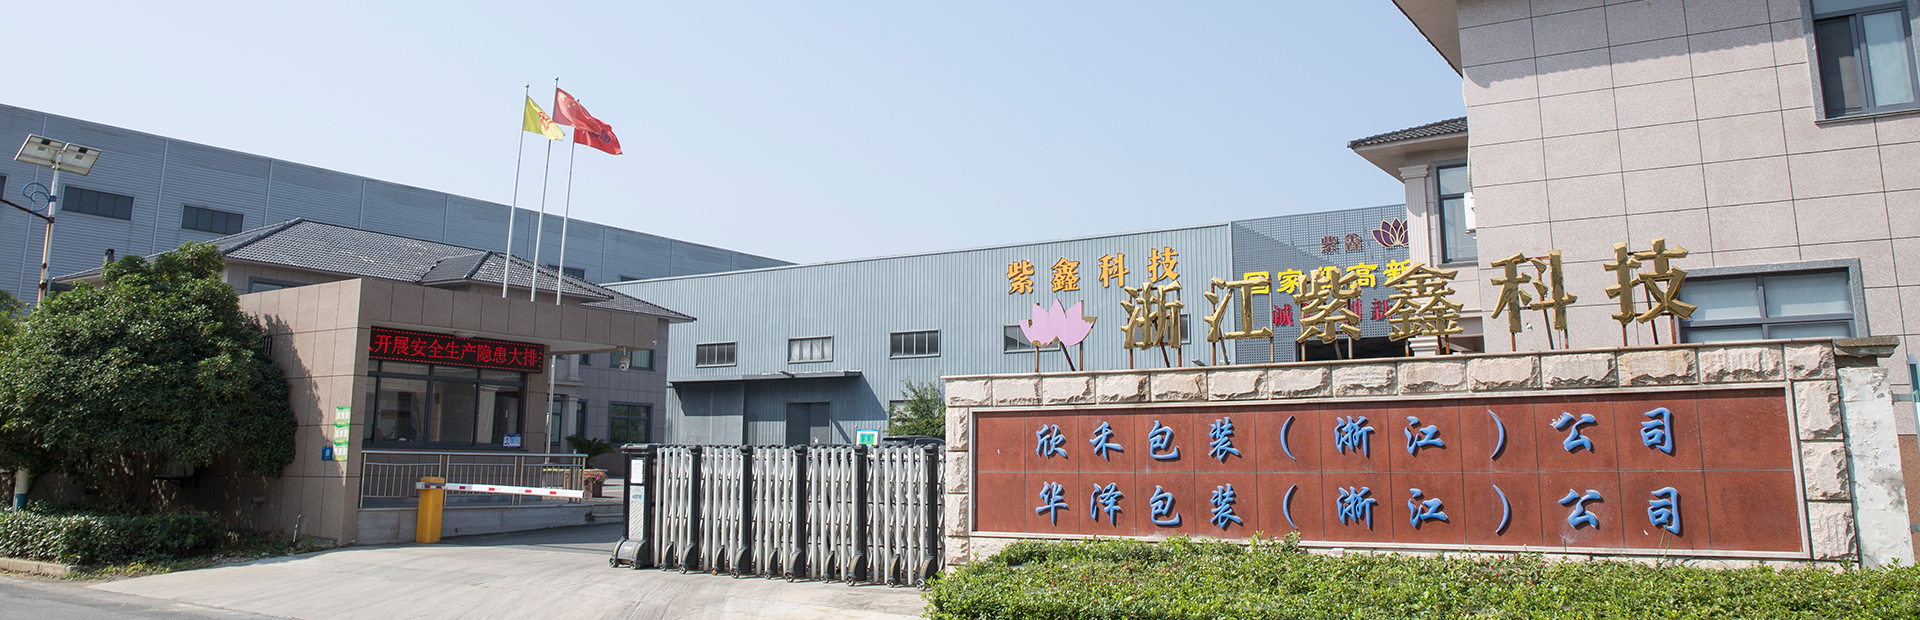 Zhejiang Changxing Zixin Technology Co., Ltd.